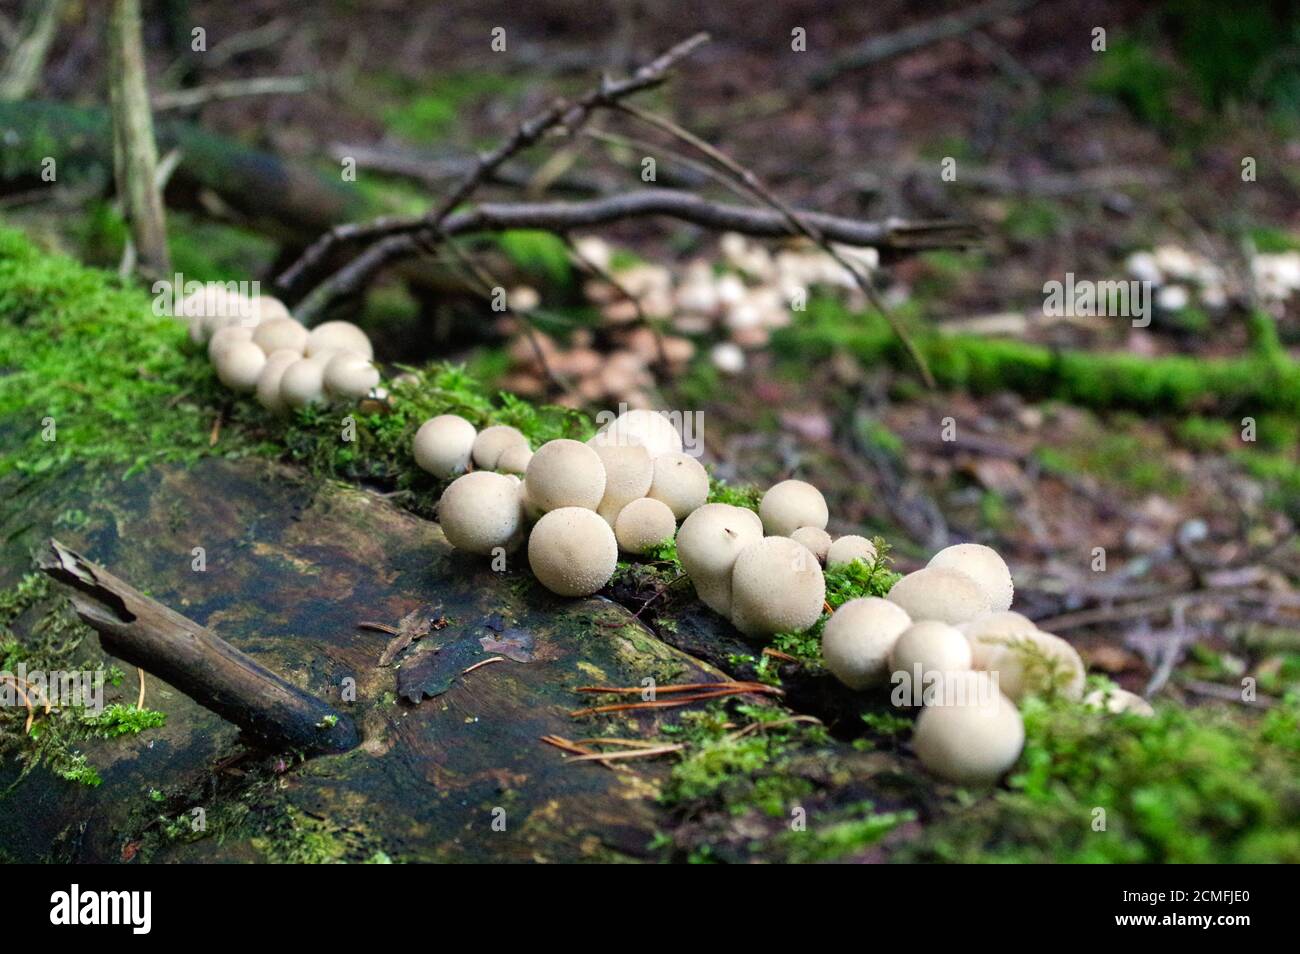 Lycoperdon marginatum fungo che cresce in un terreno forestale. Comunemente noto come peeling puffball Foto Stock